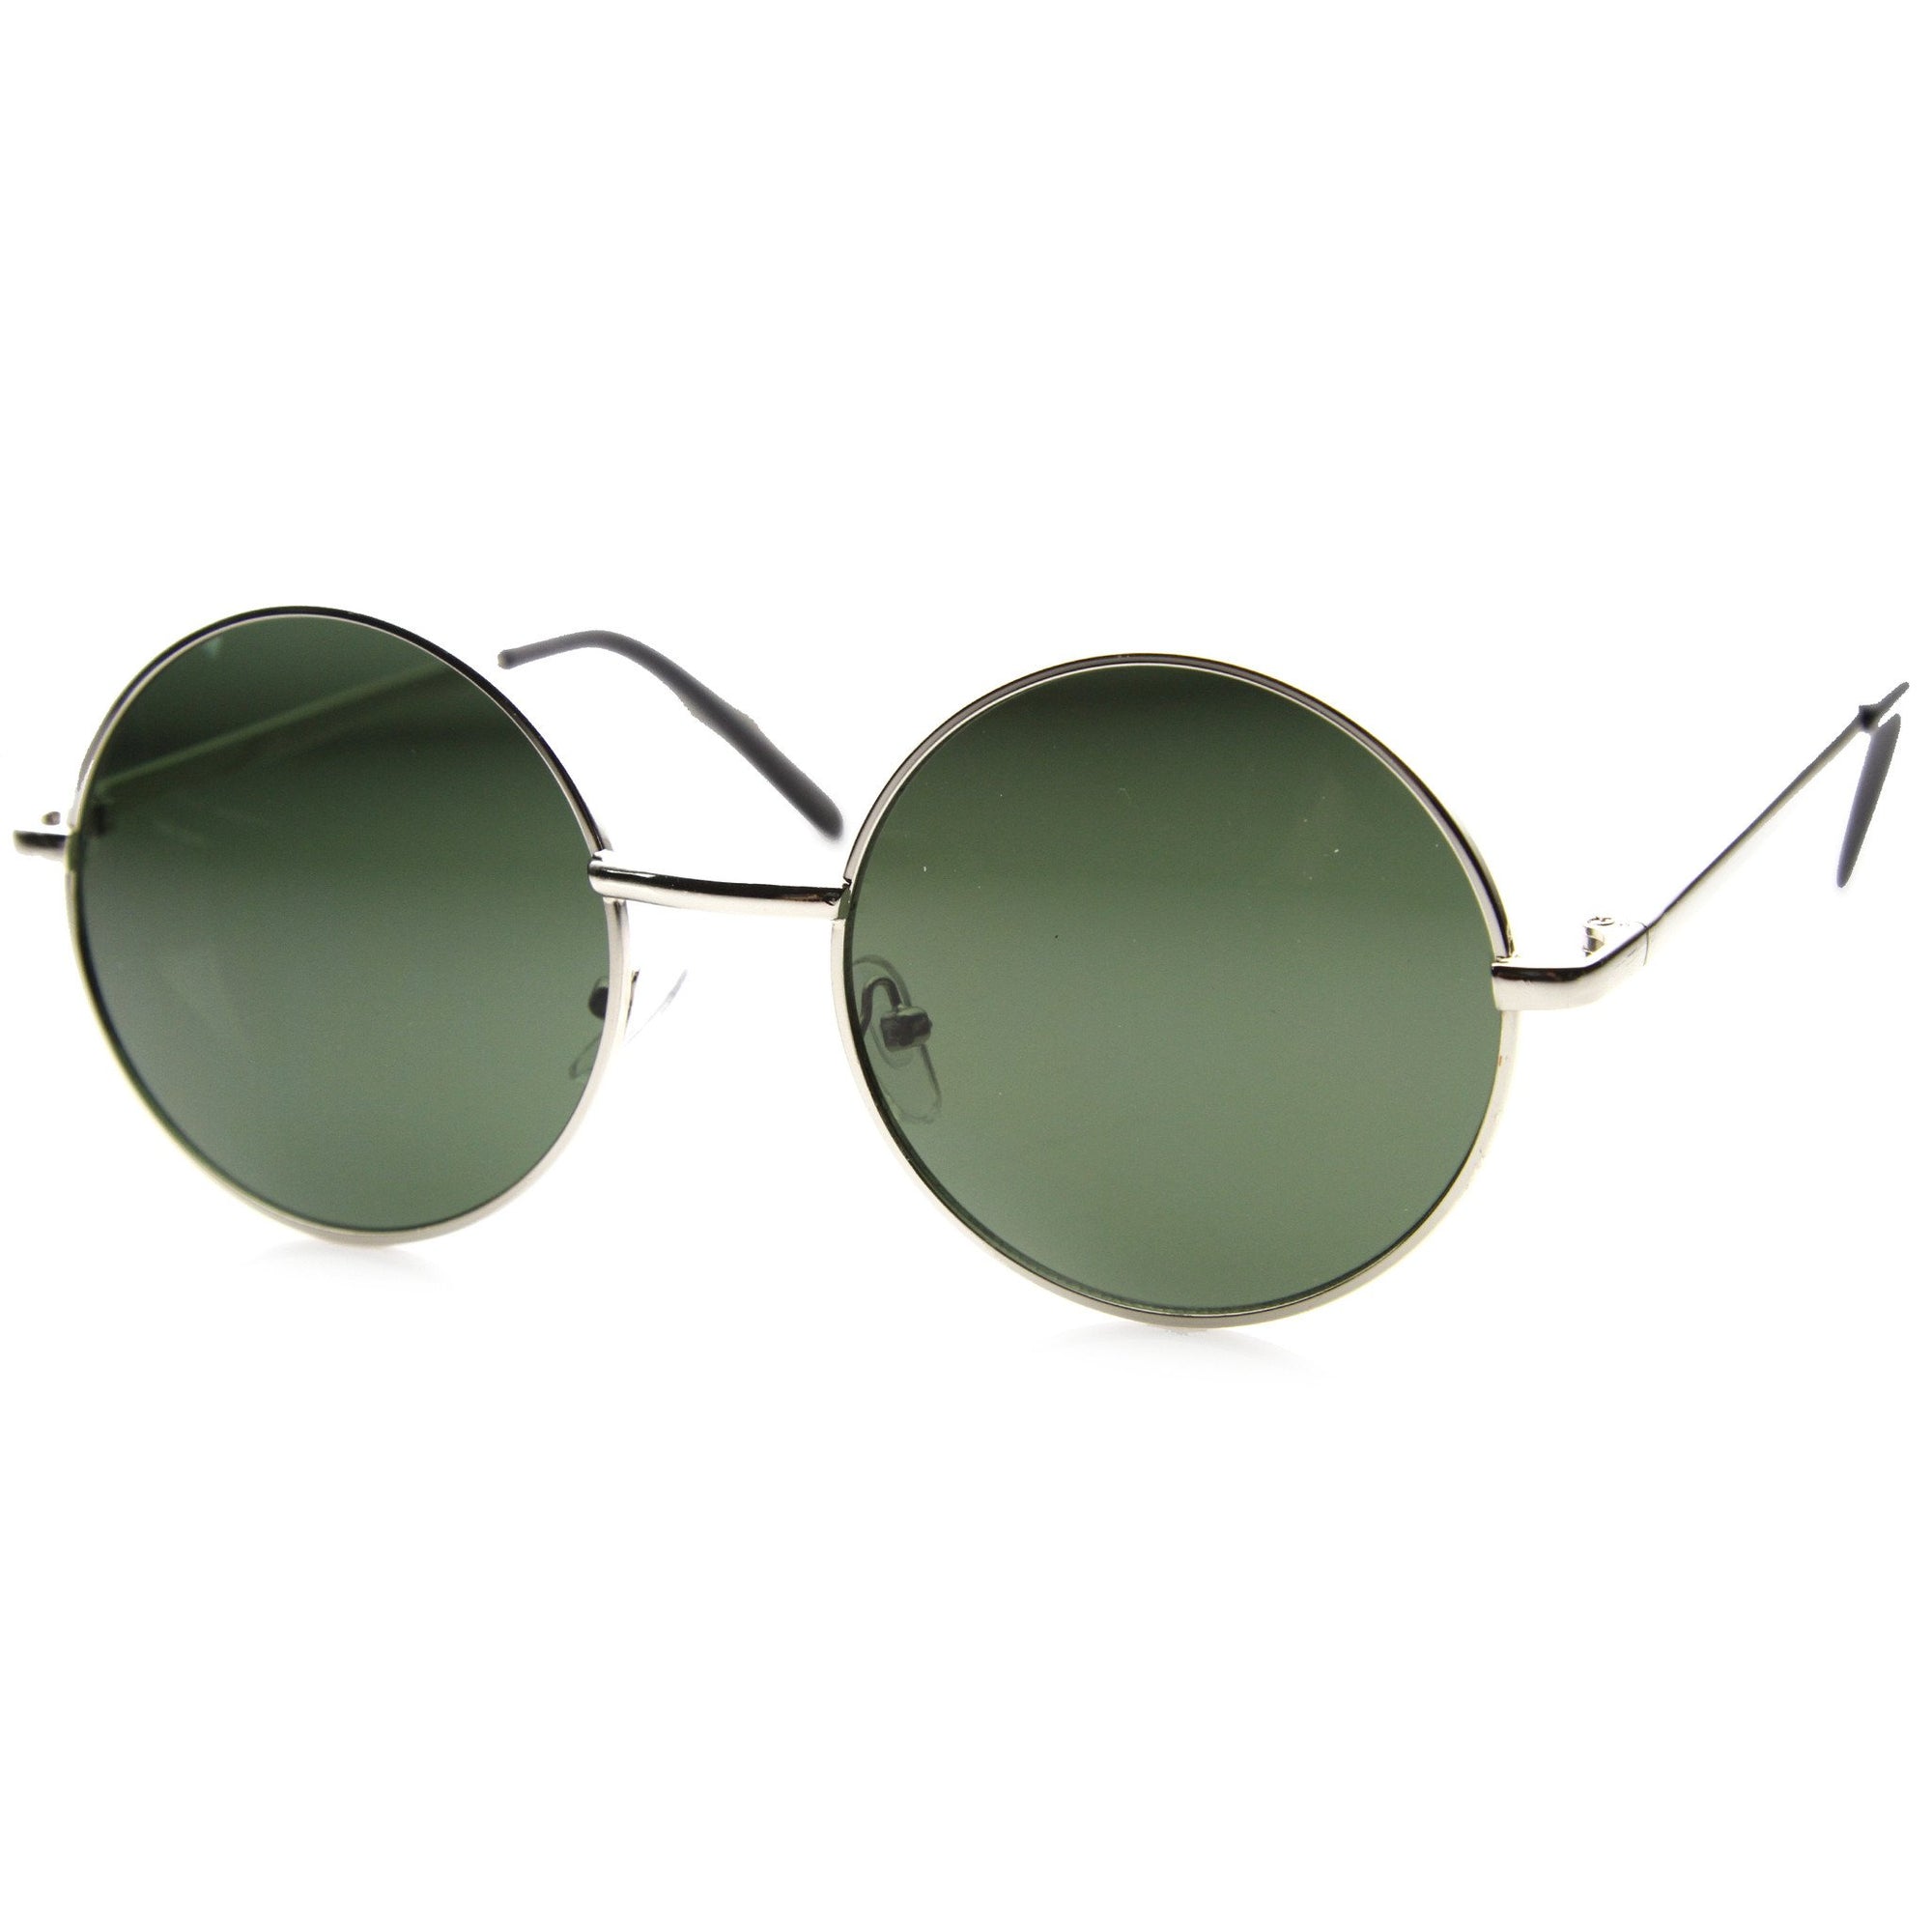 Designer Medium Round Metal Fashion Sunglasses - zeroUV